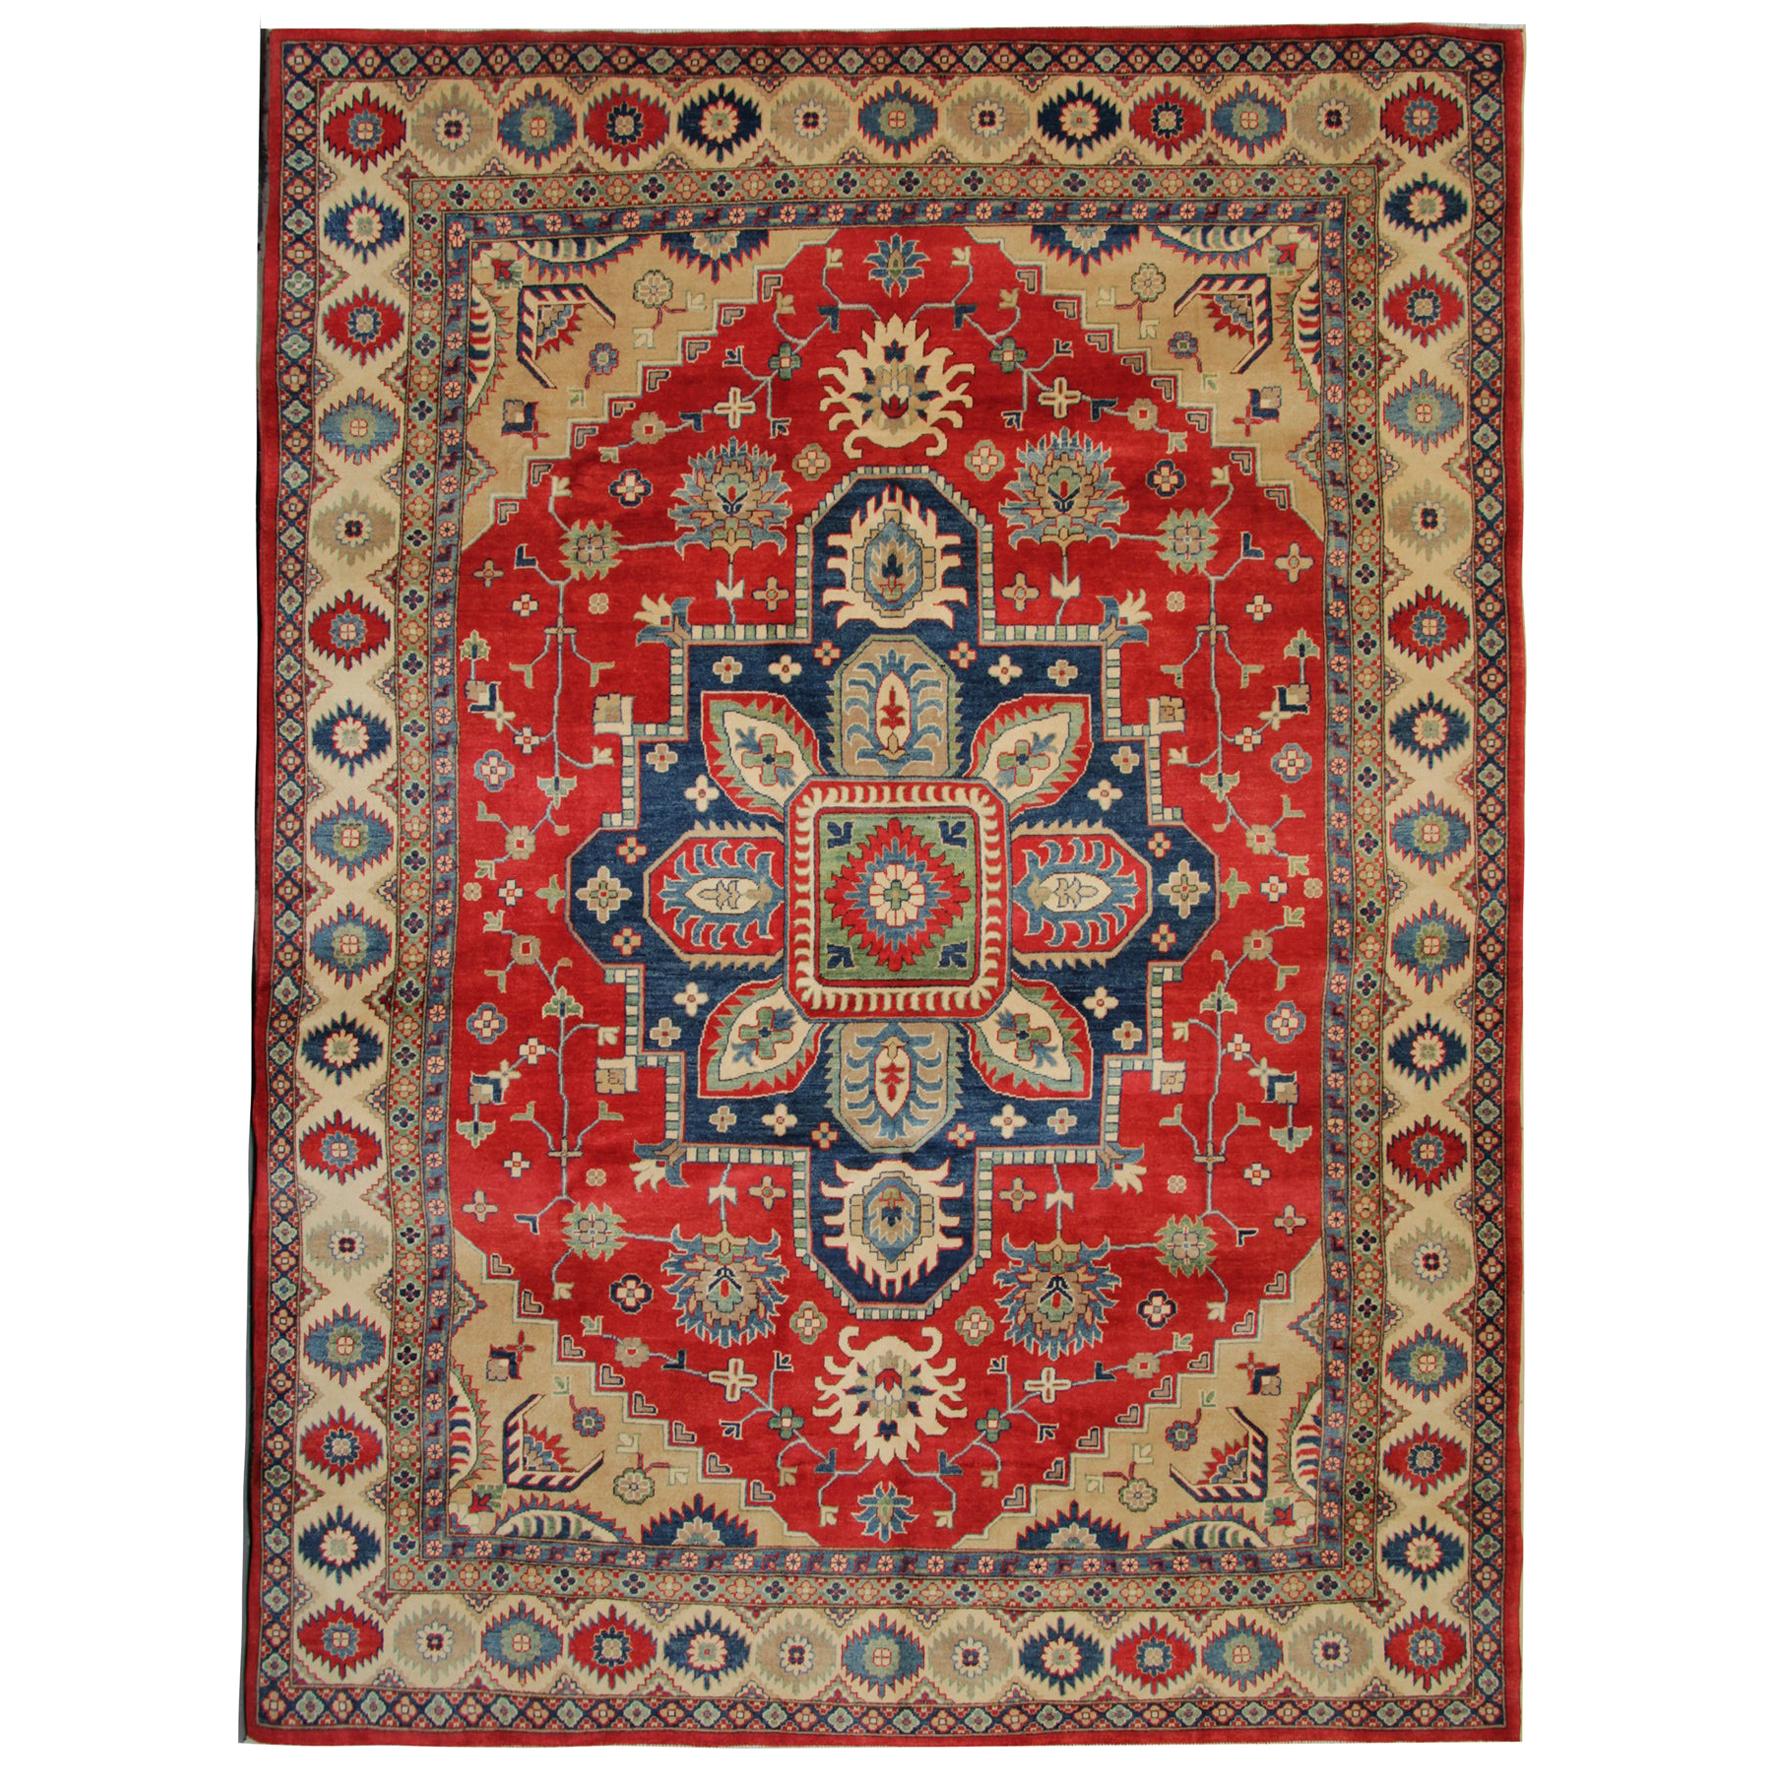 Handgefertigter geometrischer Teppich, roter Medaillon-Teppich, traditioneller kaukasischer Teppich 